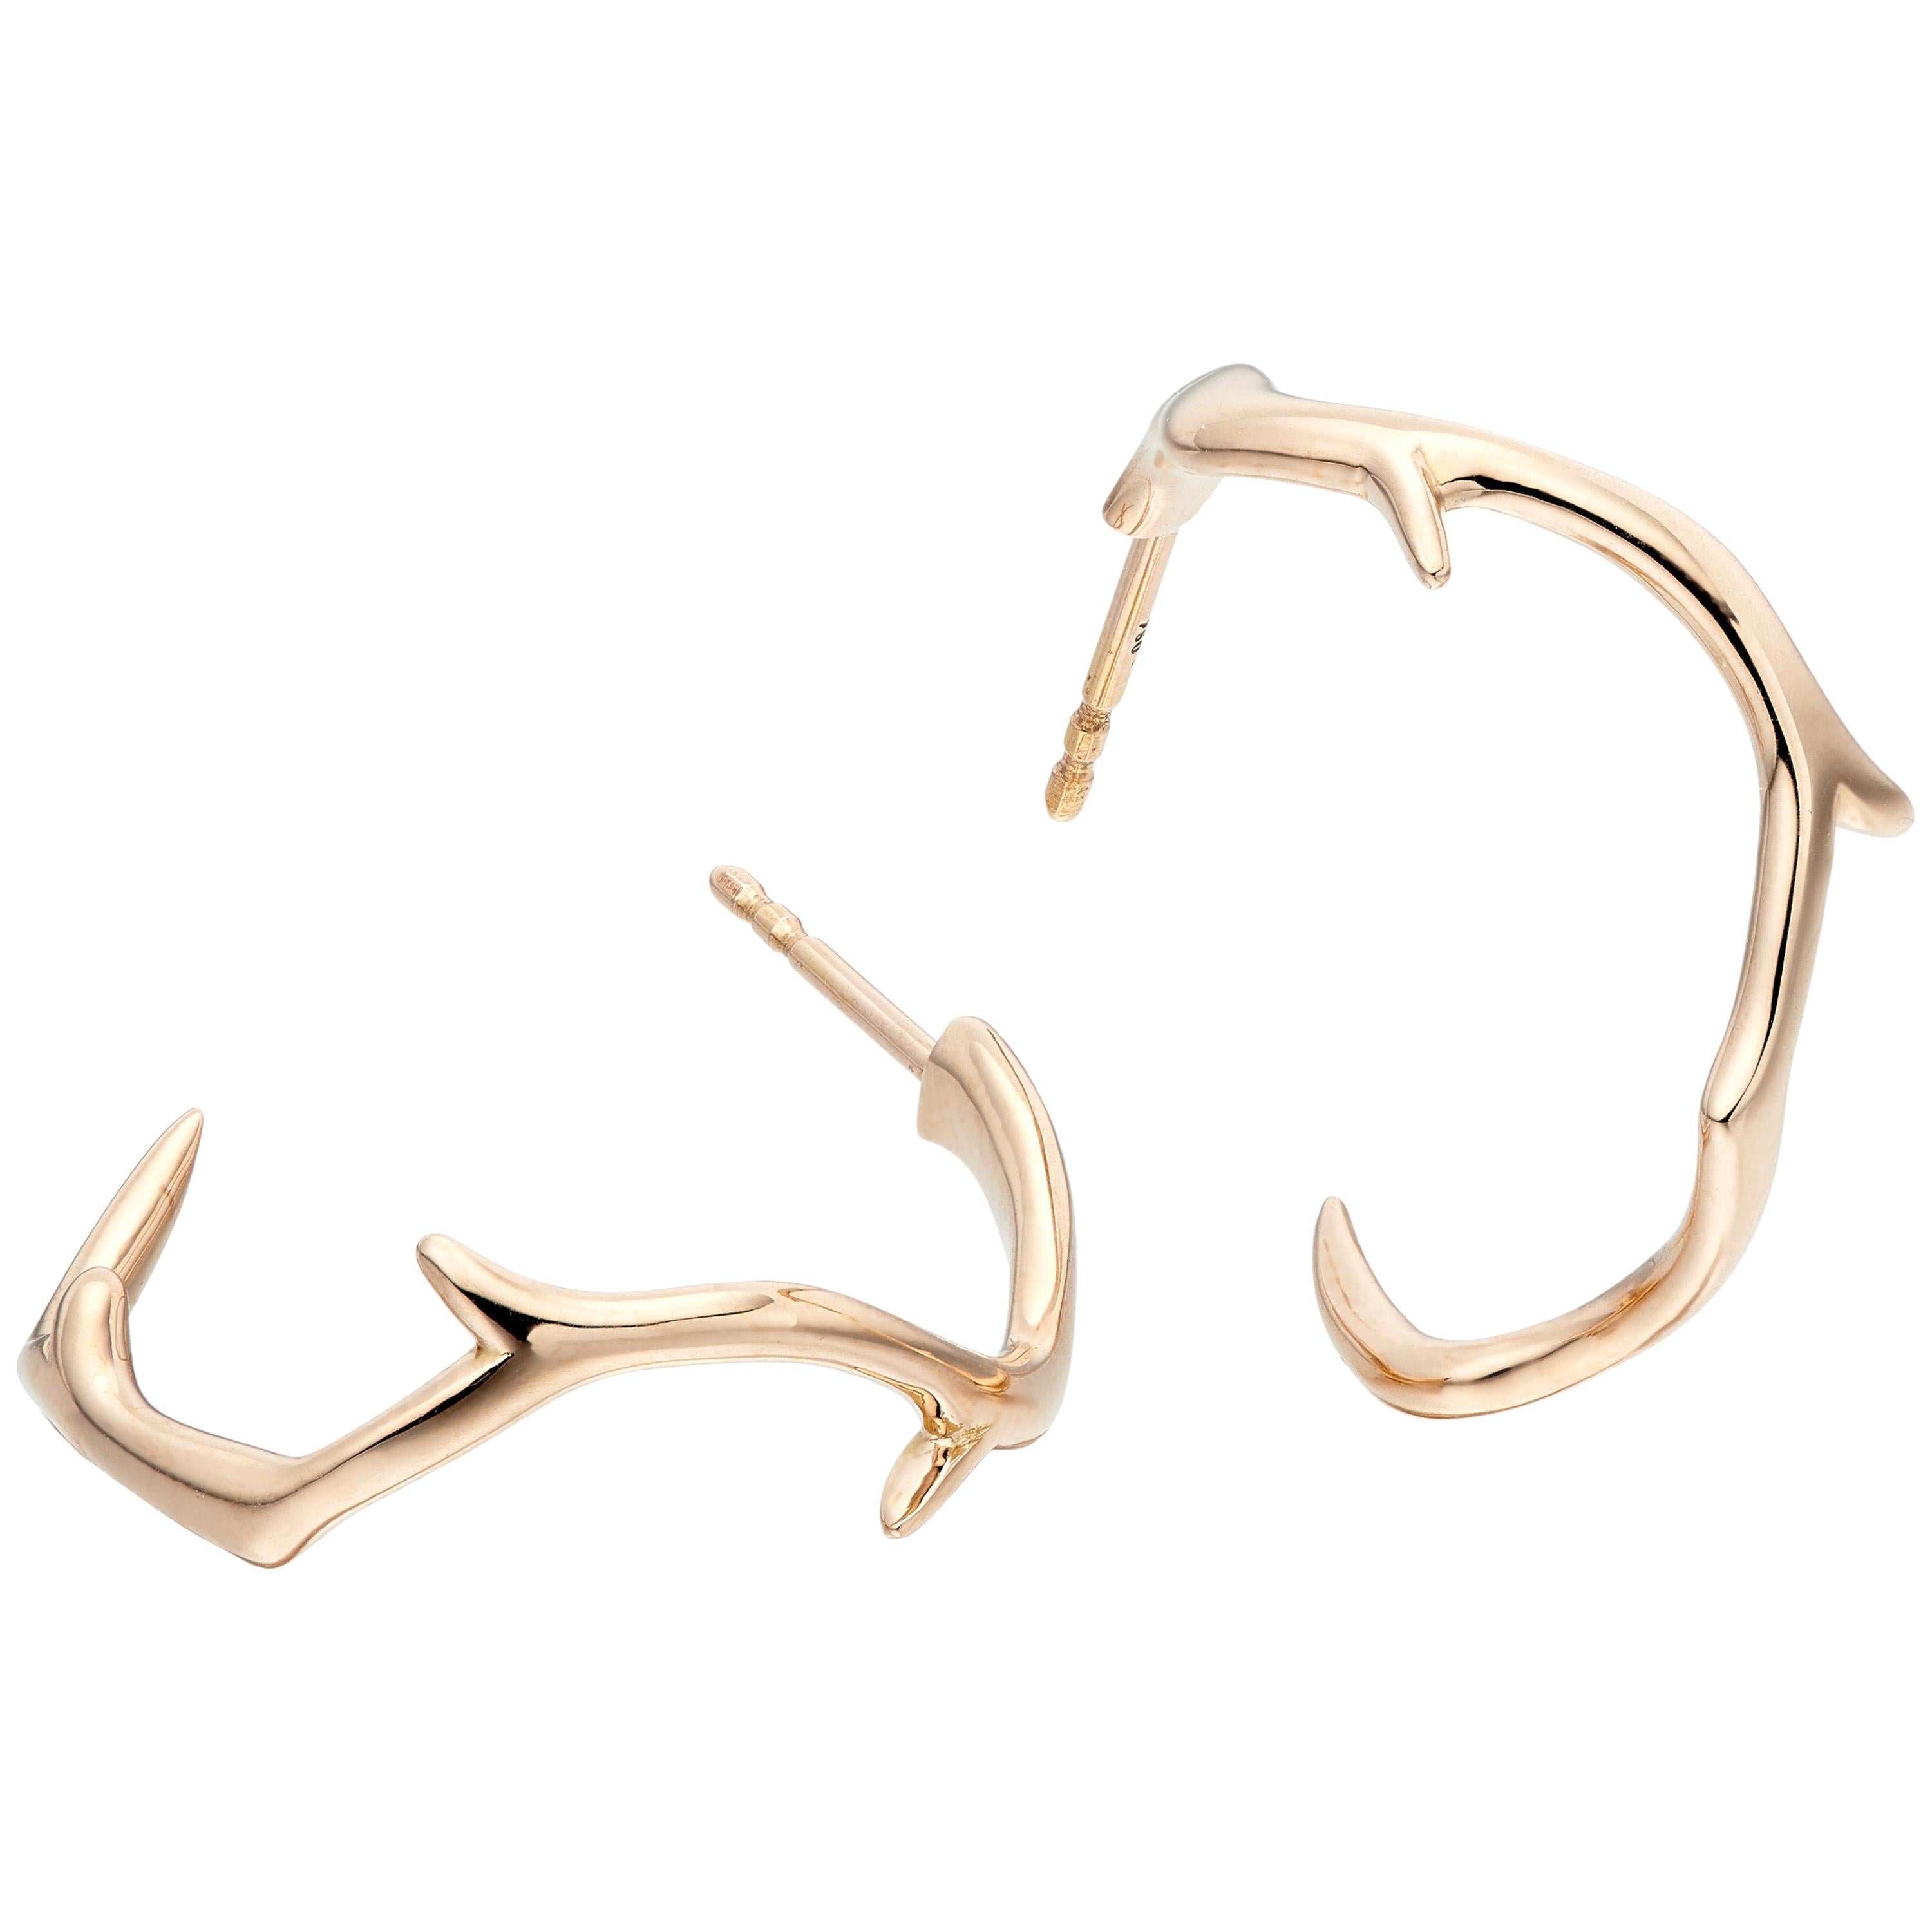 Coral Branch Hoop Earrings 18 Karat Gold For Sale